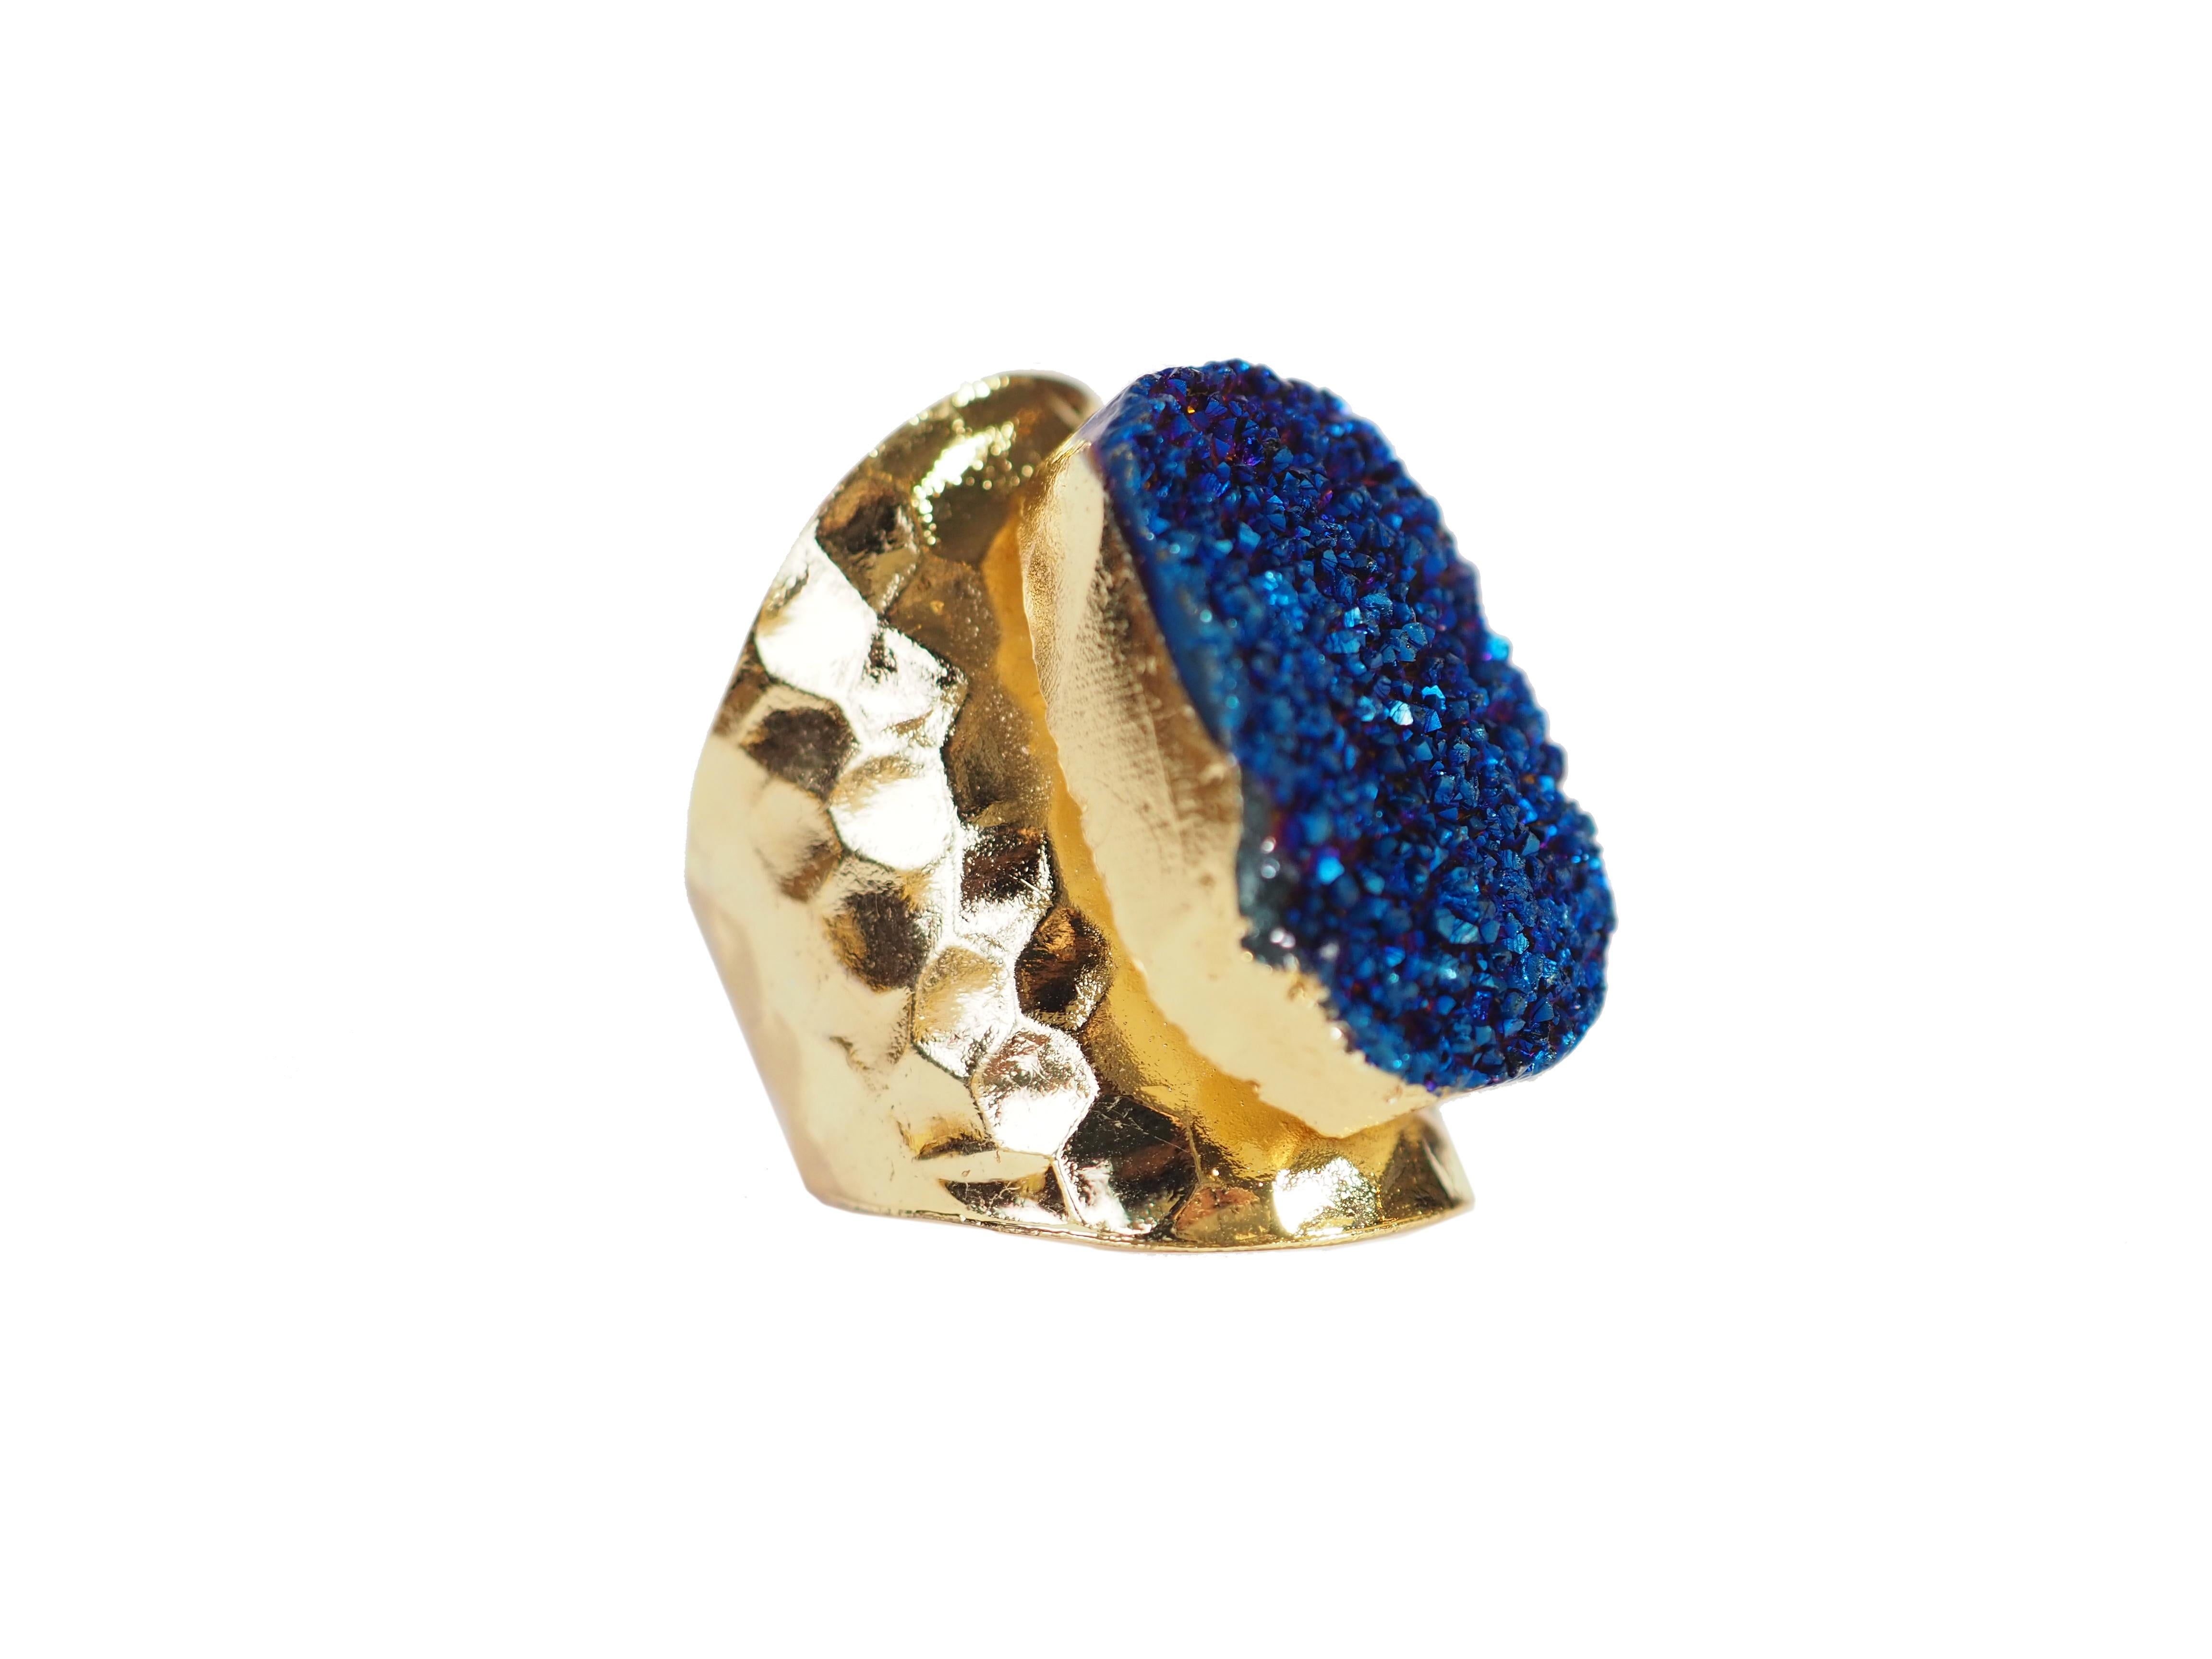 Bague druzy faite à la main avec agate bleu cristal, bronze, plaqué or, taille 14 ajustable.
Tous les bijoux Giulia Colussi Jewelry sont neufs et n'ont jamais été portés ou possédés auparavant. Chaque article arrivera à votre porte joliment emballé